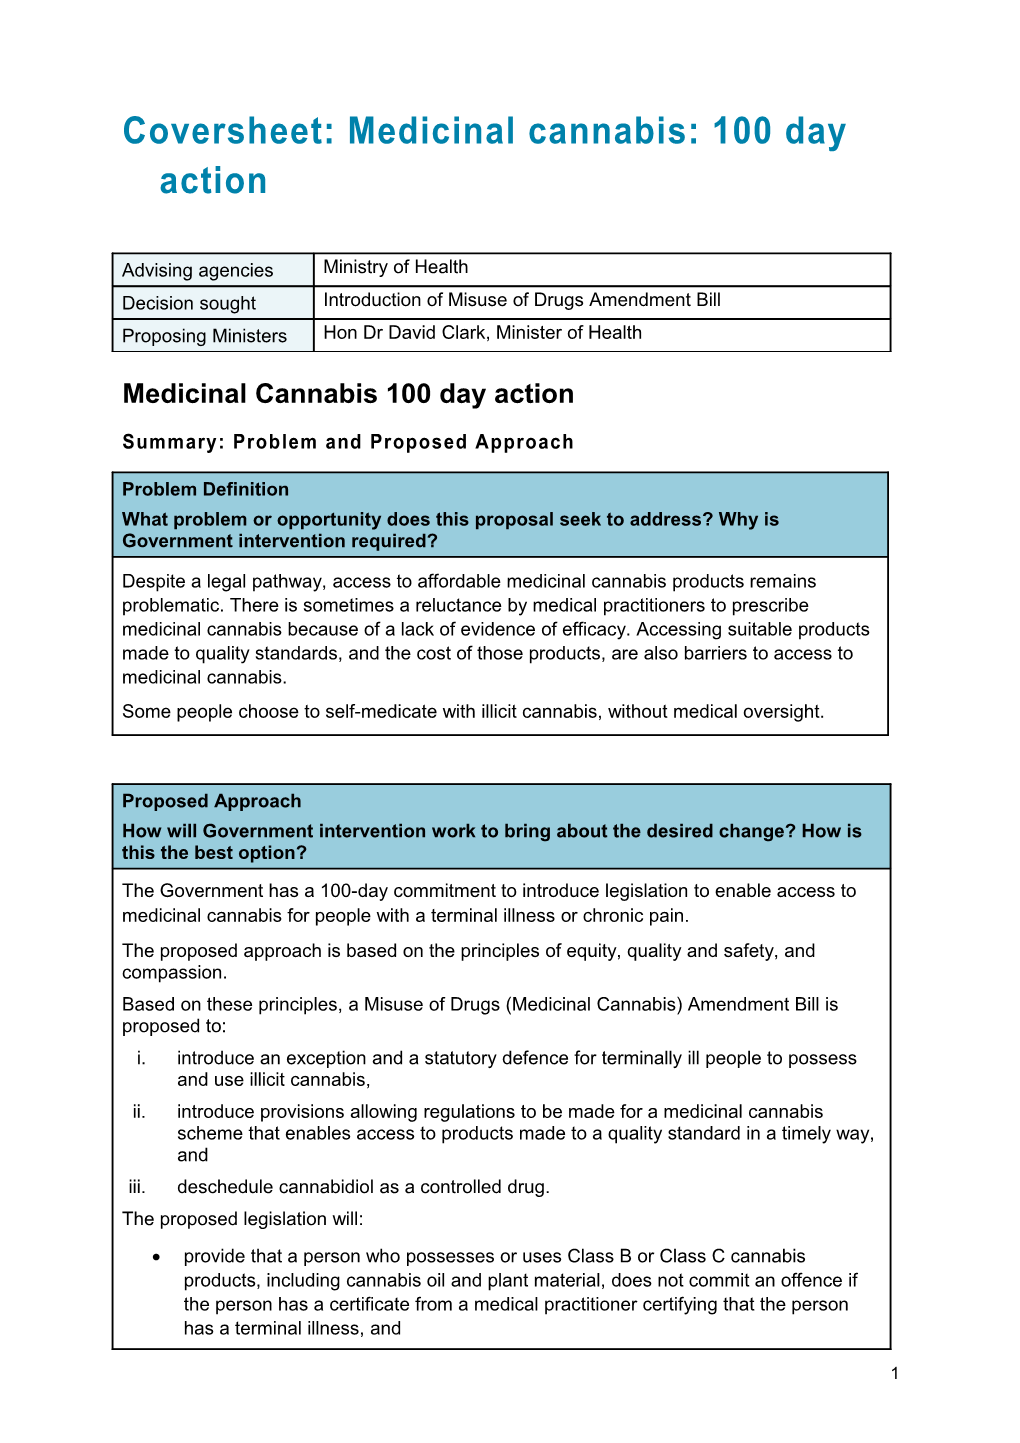 Coversheet: Medicinal Cannabis: 100 Day Action